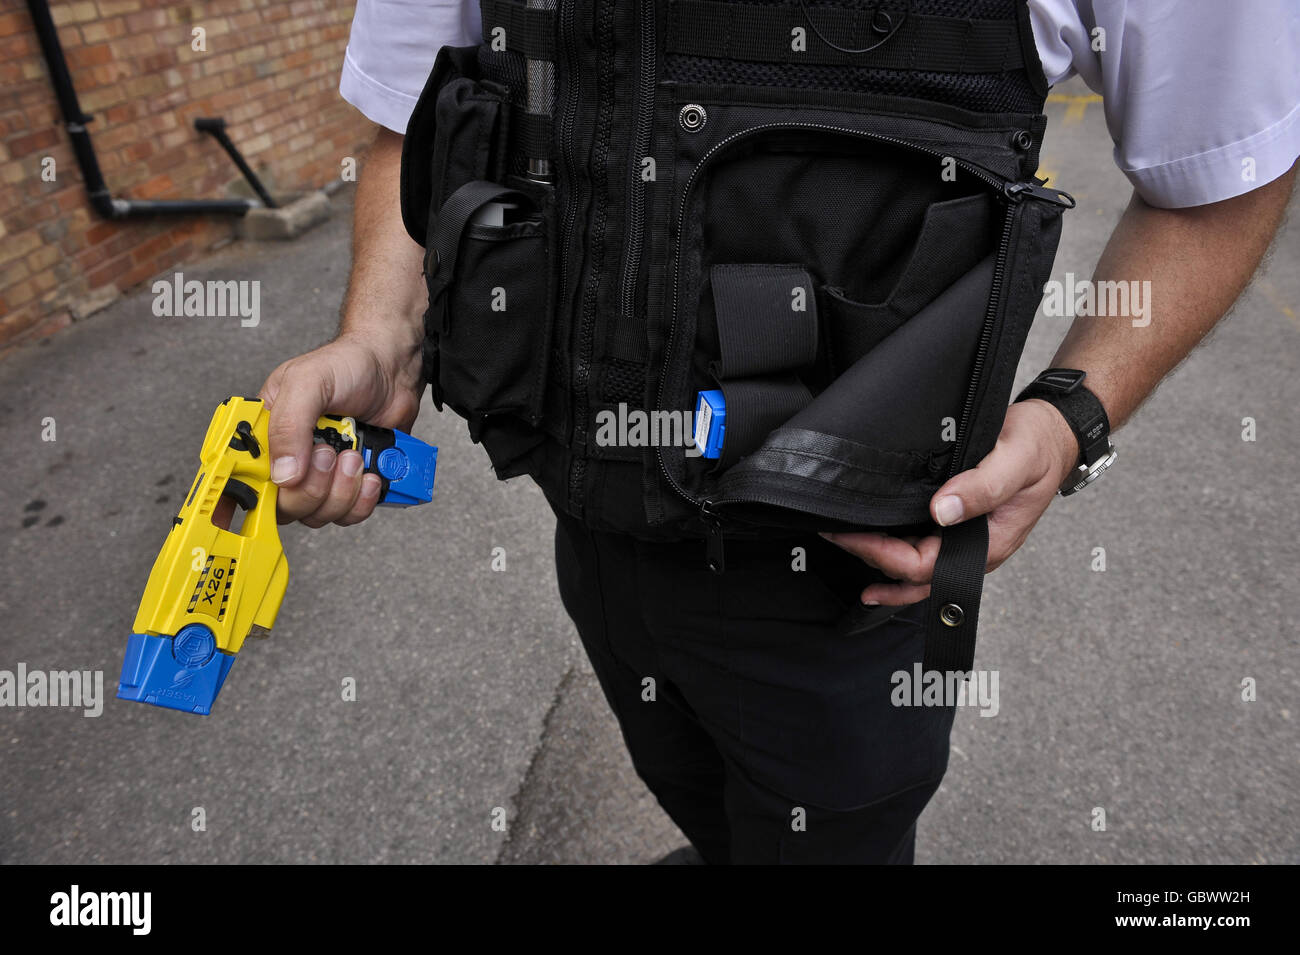 Un poliziotto tiene un Taser X26 in una mano dotato di cartucce blu per l'allenamento e mostra la custodia dove la pistola è stata inserita Foto Stock